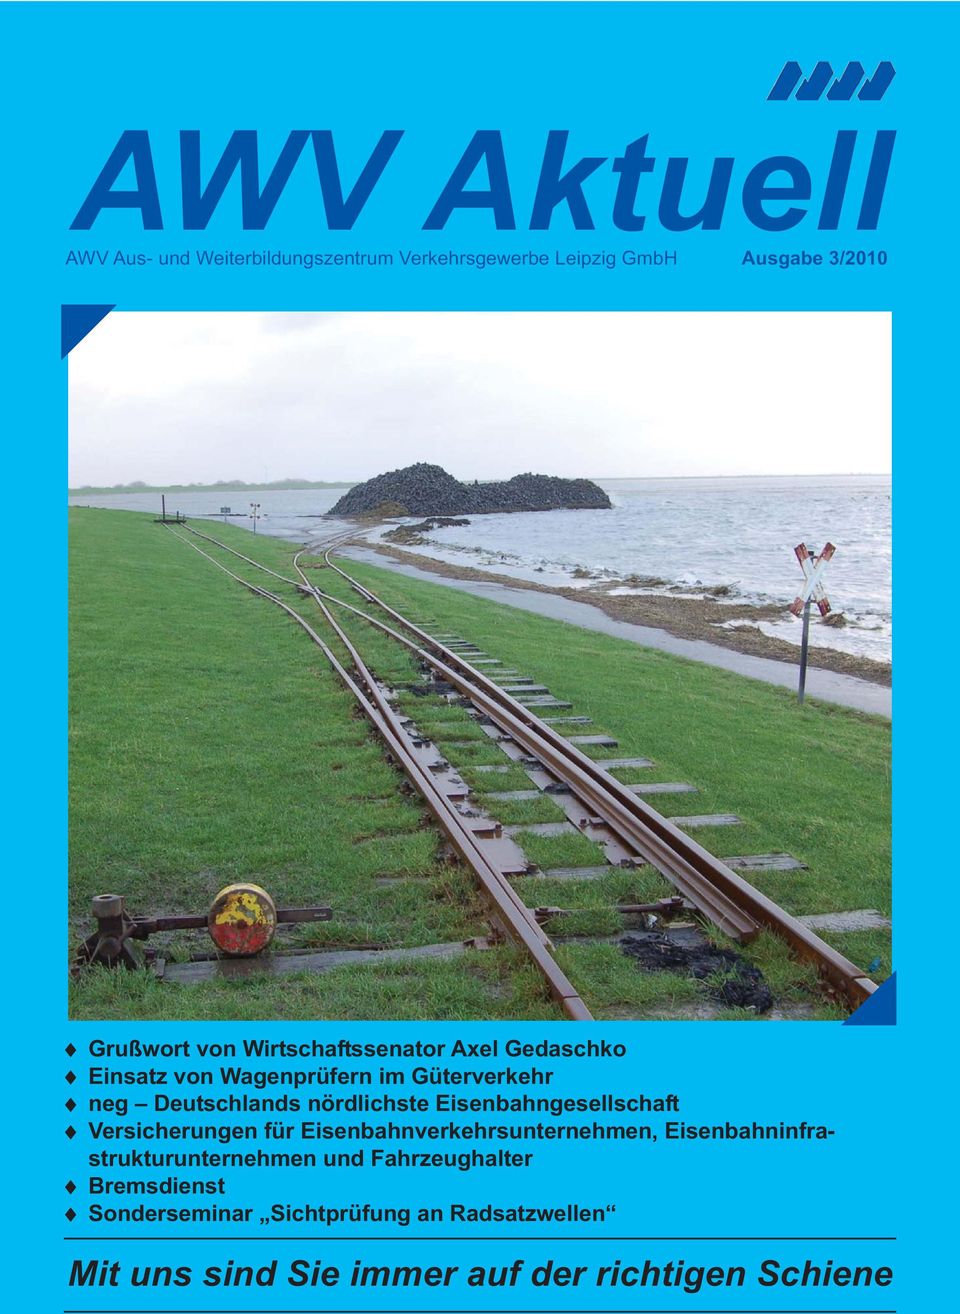 Eisenbahngesellschaft Versicherungen für Eisenbahnverkehrsunternehmen, Eisenbahninfrastrukturunternehmen